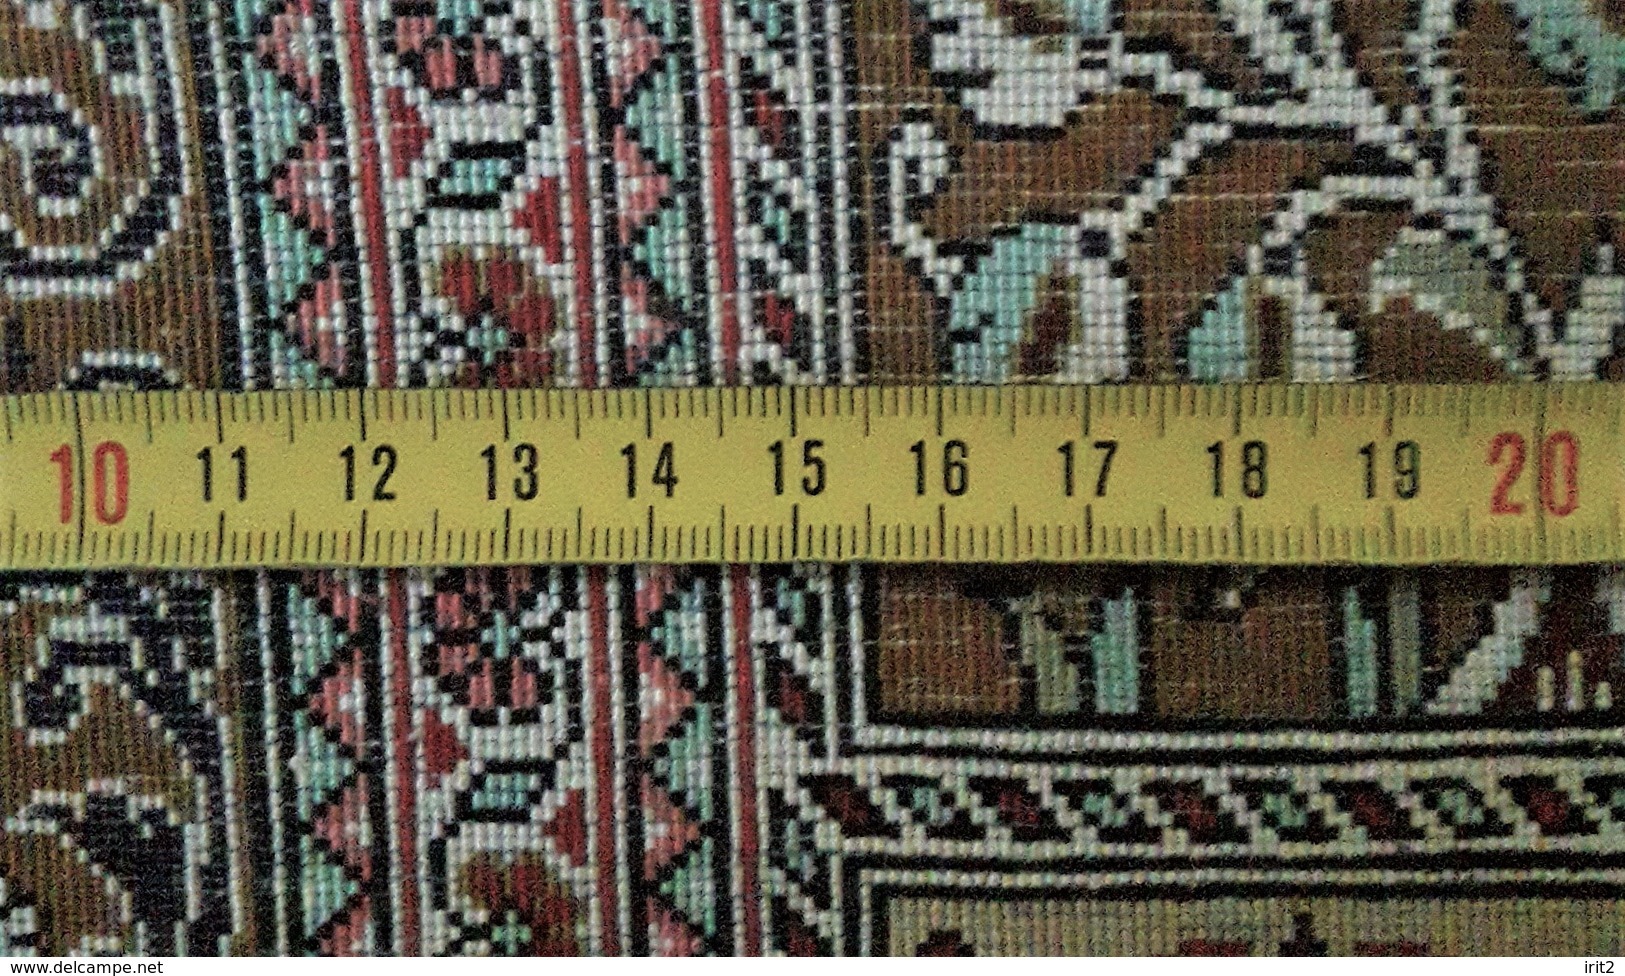 Persia - Iran - Tappeto Persiano QUM 100% Pura Seta - 100% Silk - Rugs, Carpets & Tapestry